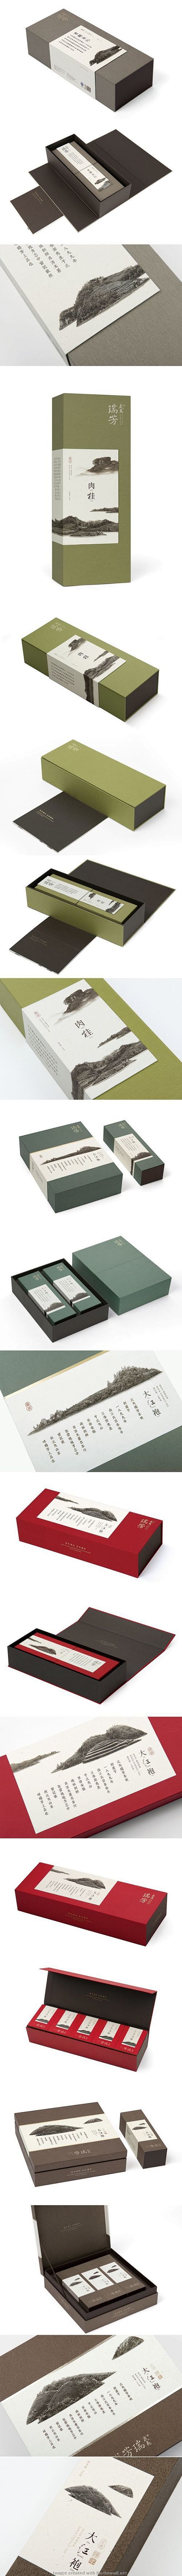 茶叶盒设计